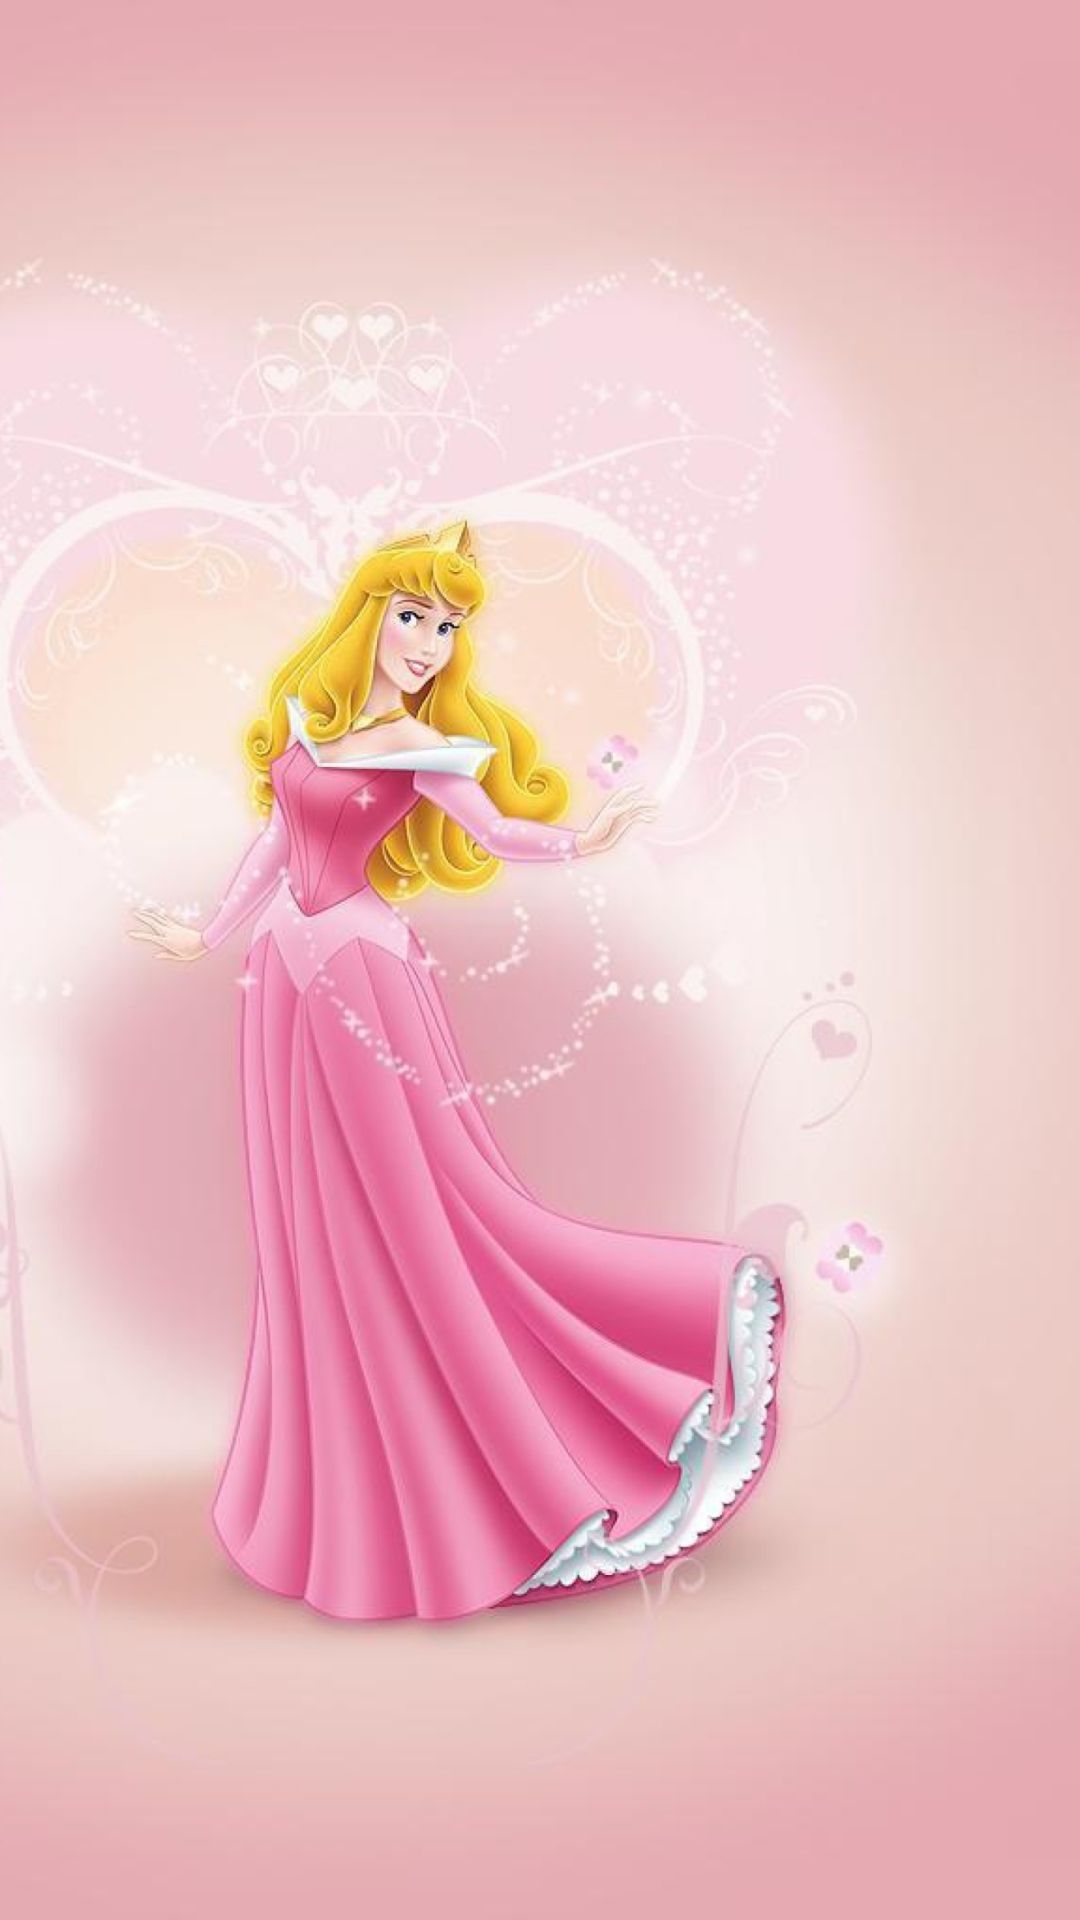 iPhone Cute Disney Princess Wallpaper